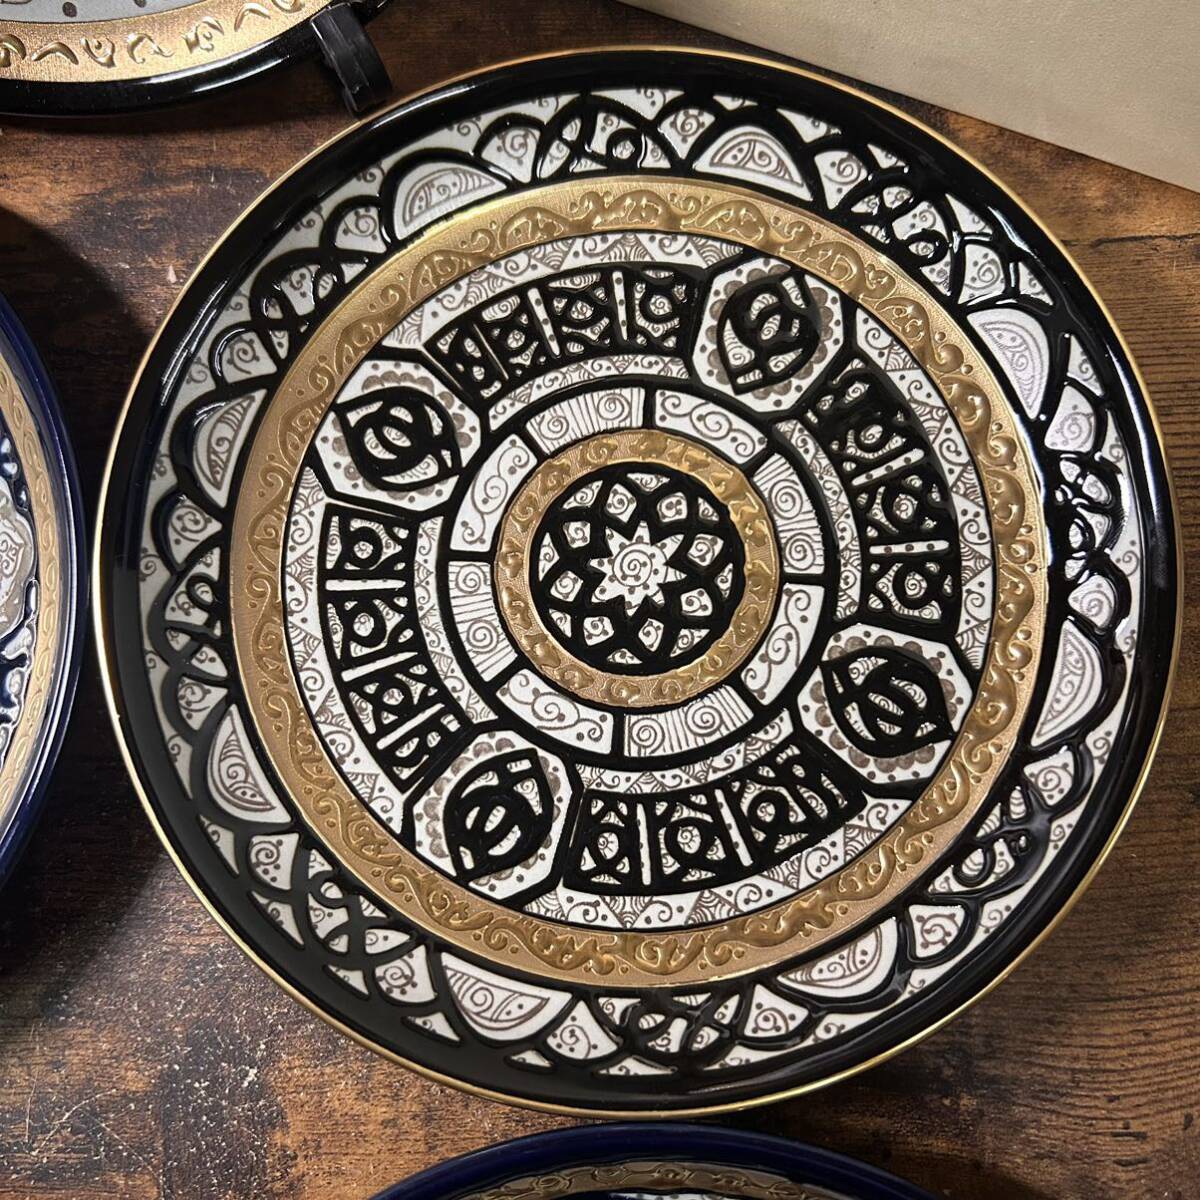 Eclectique kai kai Pal tena. способ макароны тарелка посуда тарелка в европейком стиле 5 шт. комплект суммировать не использовался товар 